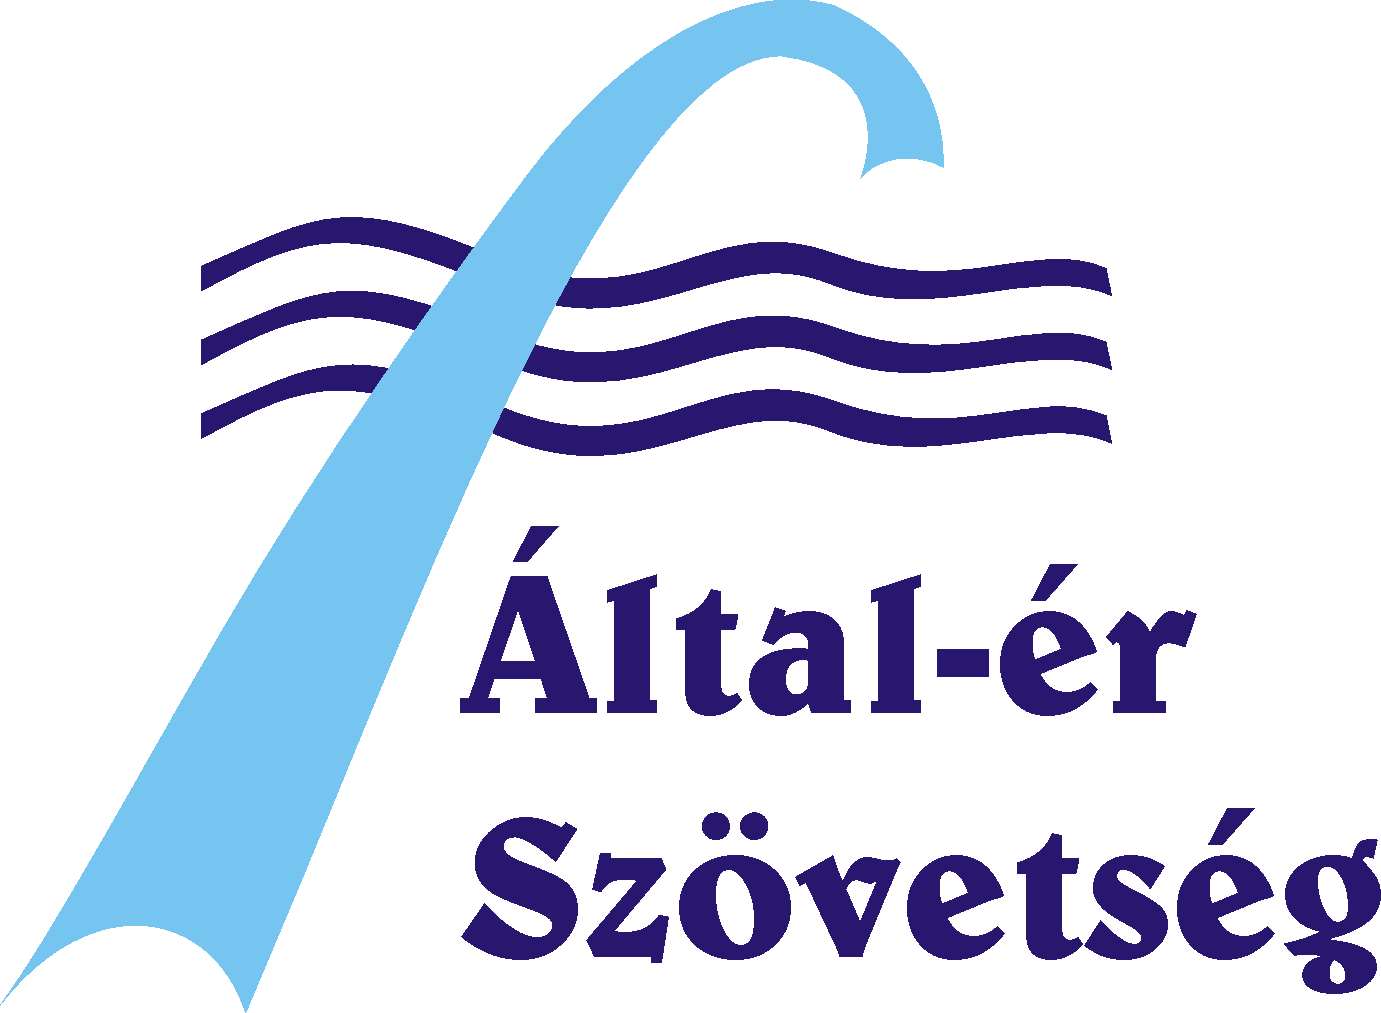 Által-ér Szövetség logója